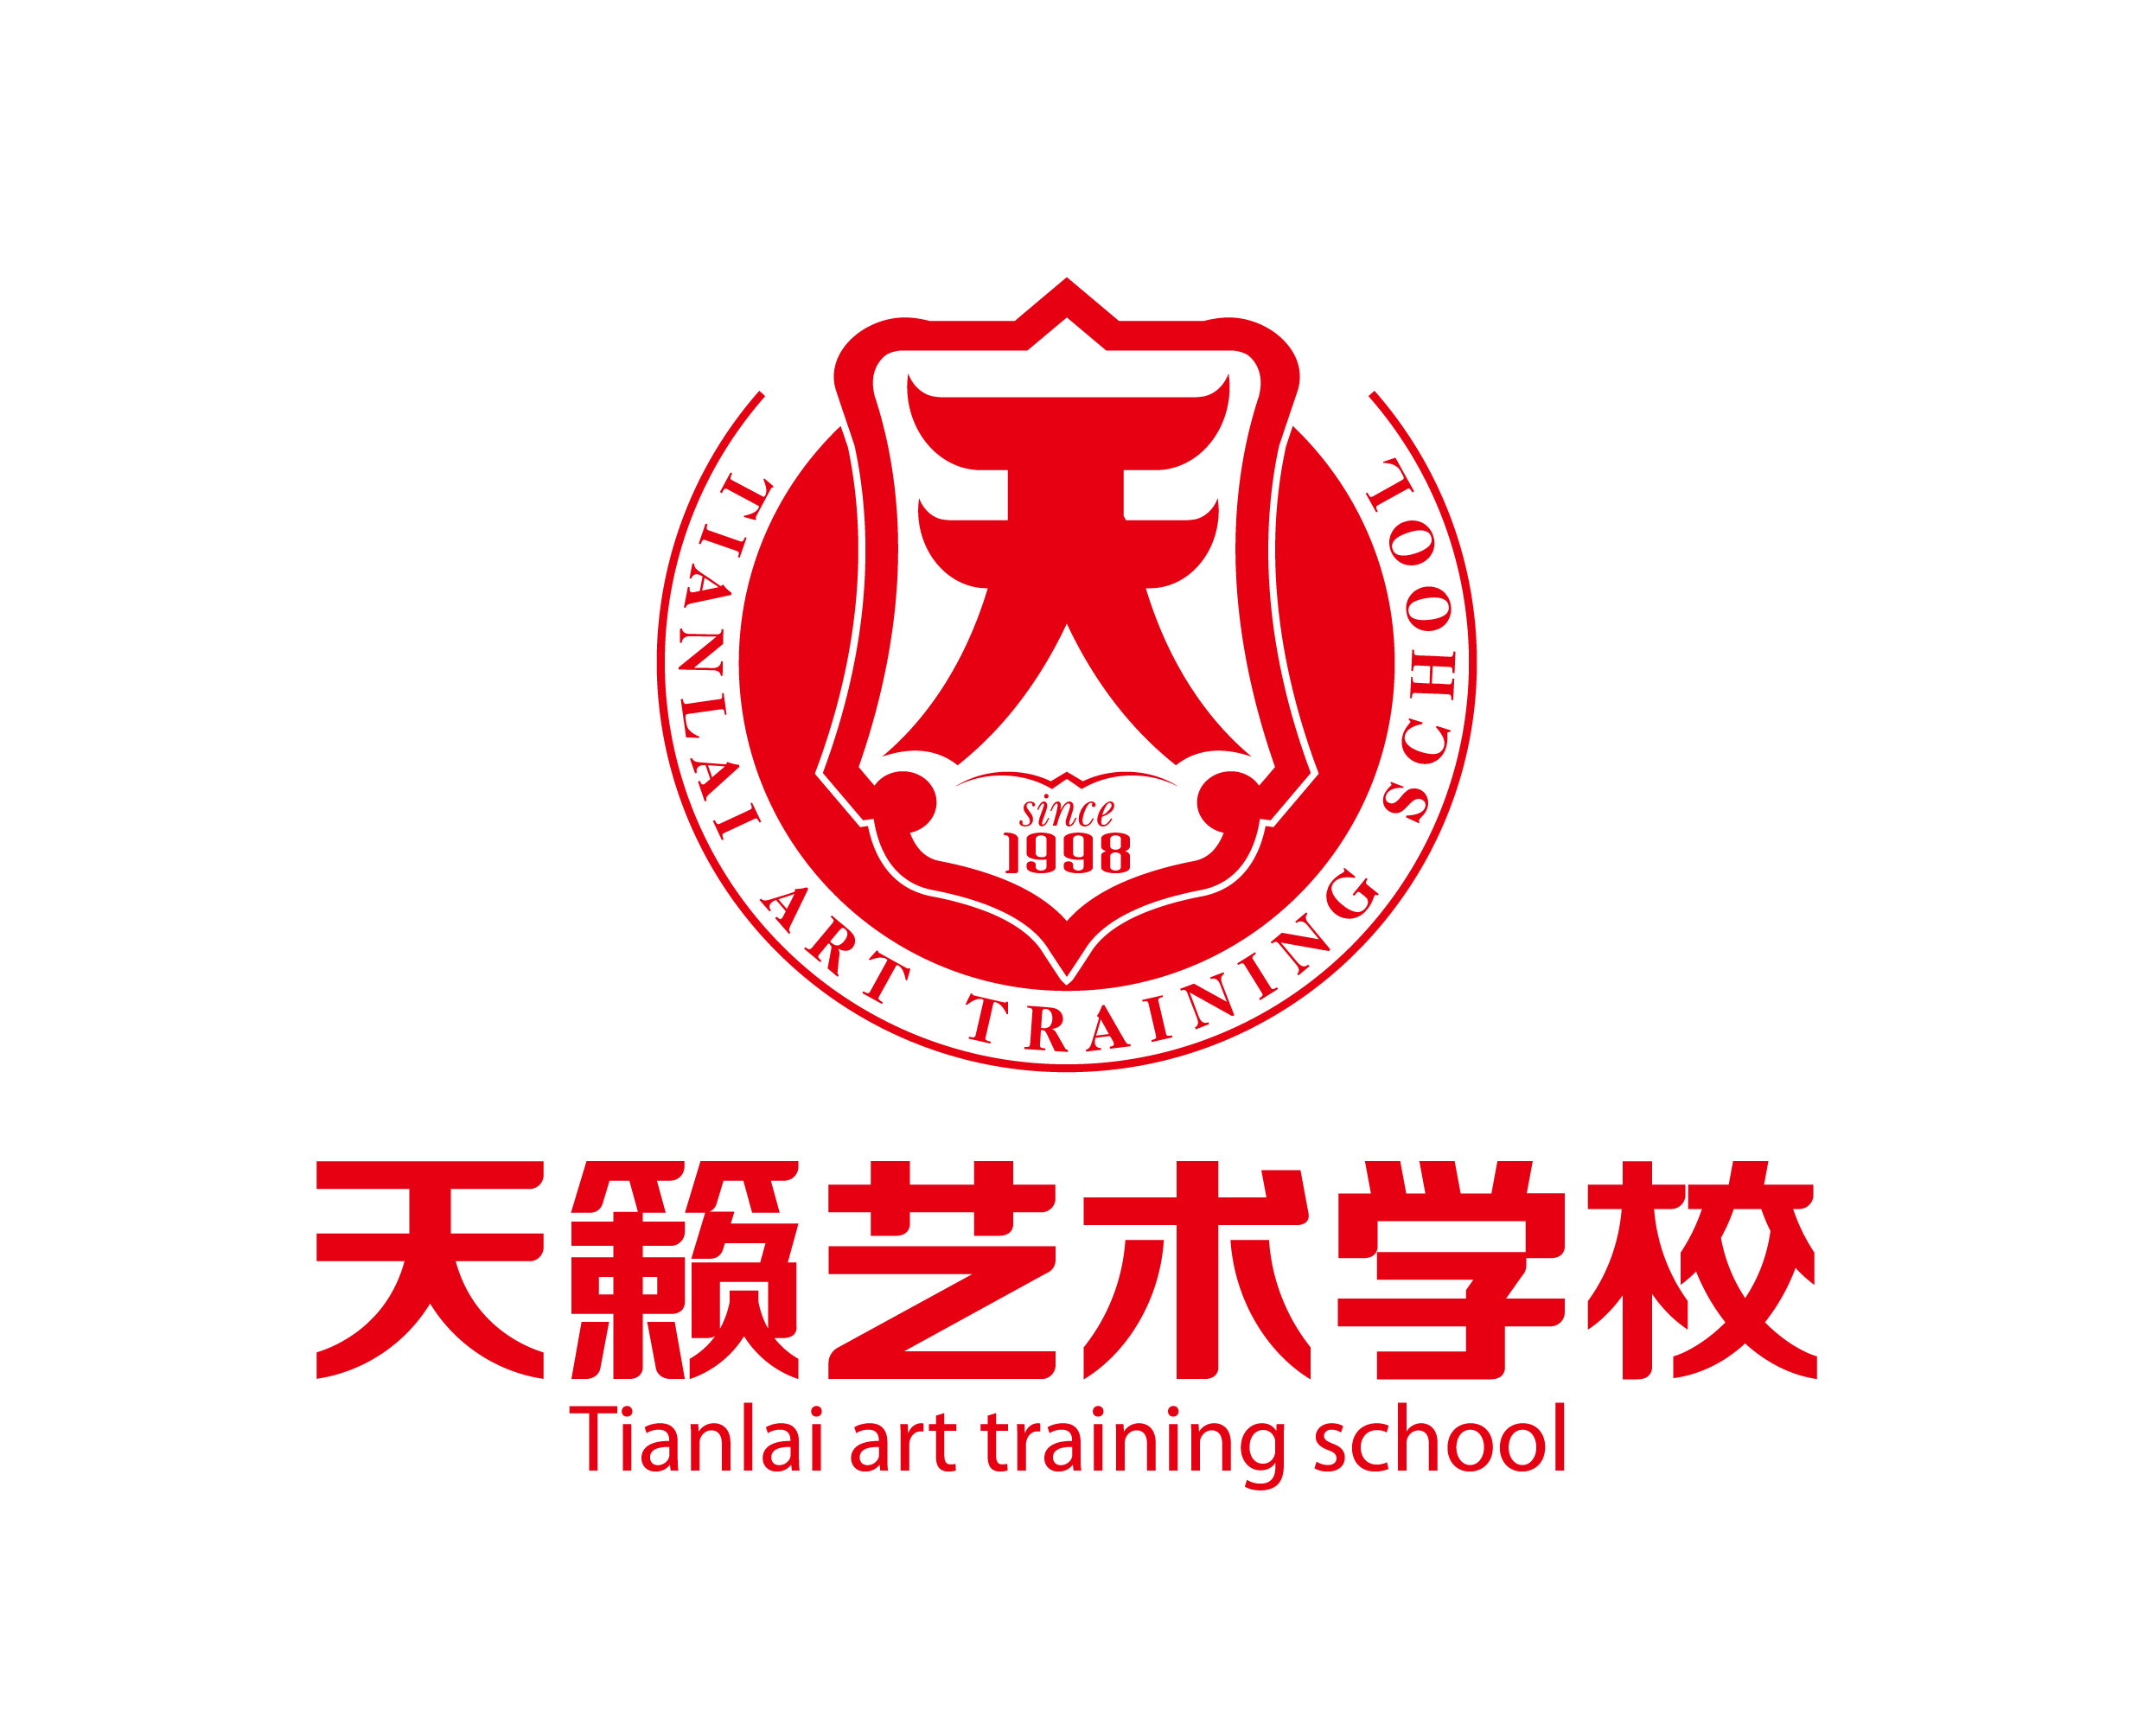 重庆天籁艺术文化培训学校有限公司